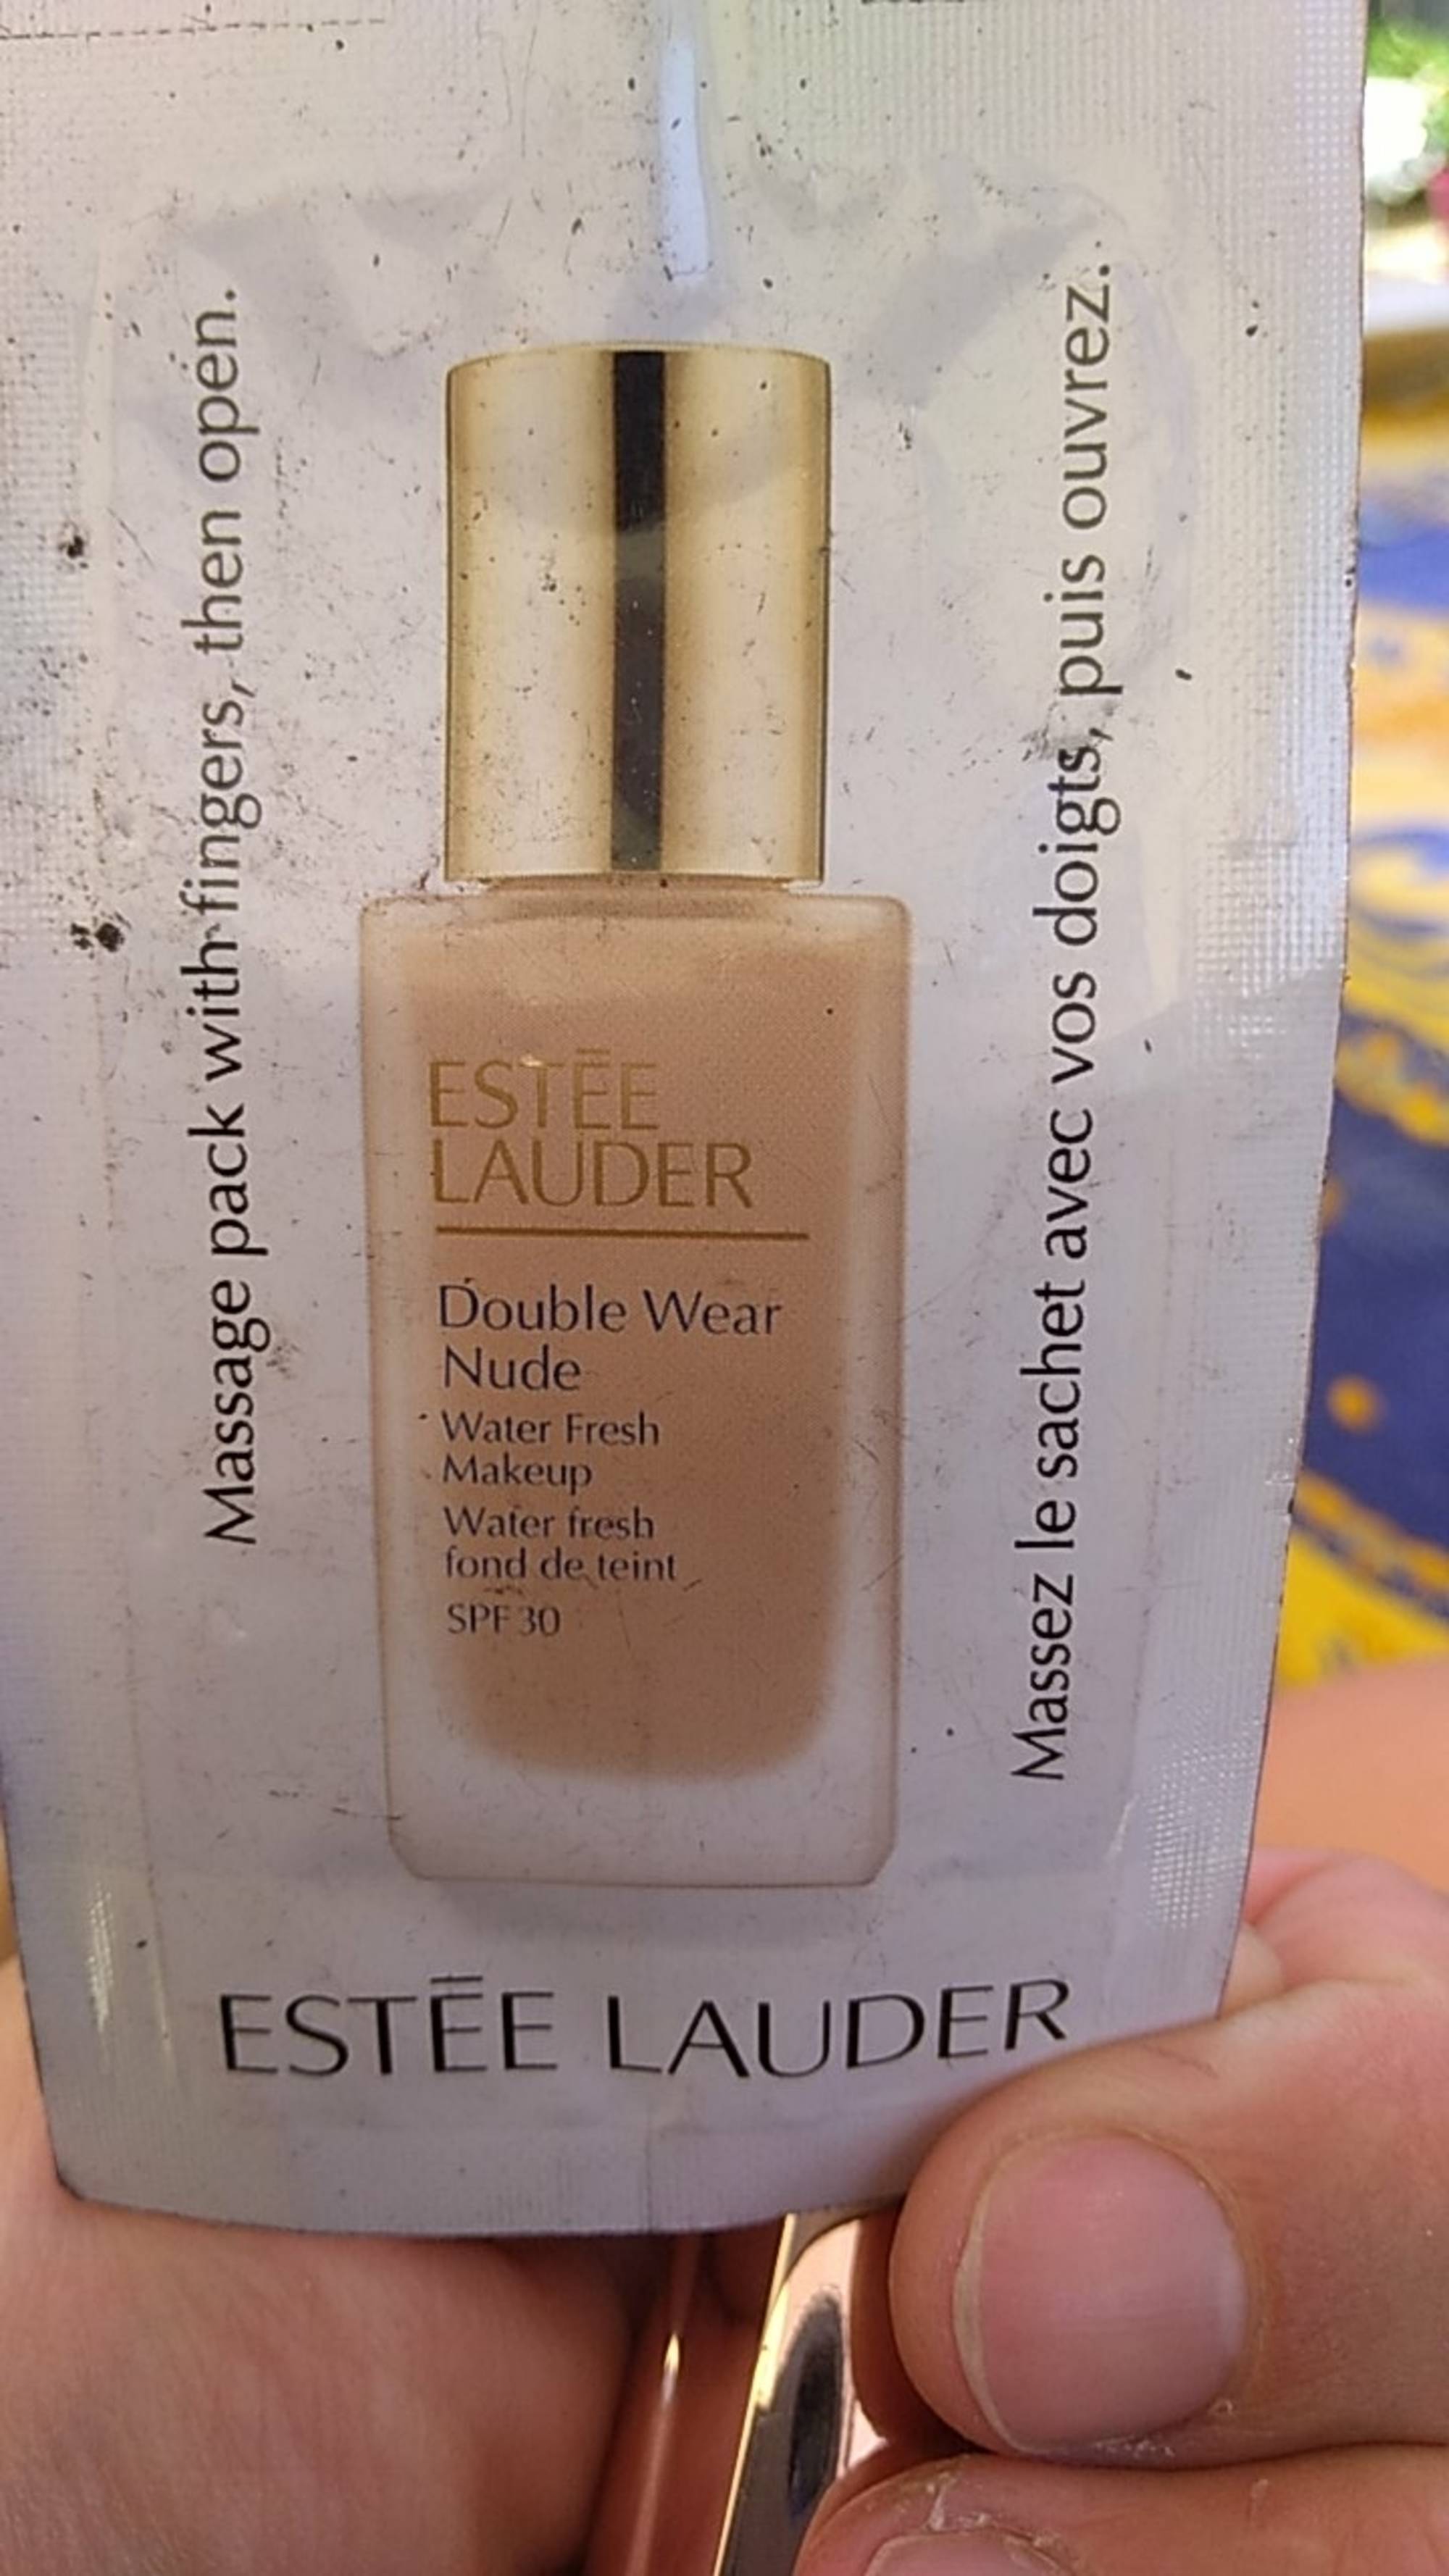 ESTEE LAUDER - Double wear nude - Fond de teint water fresh spf 30